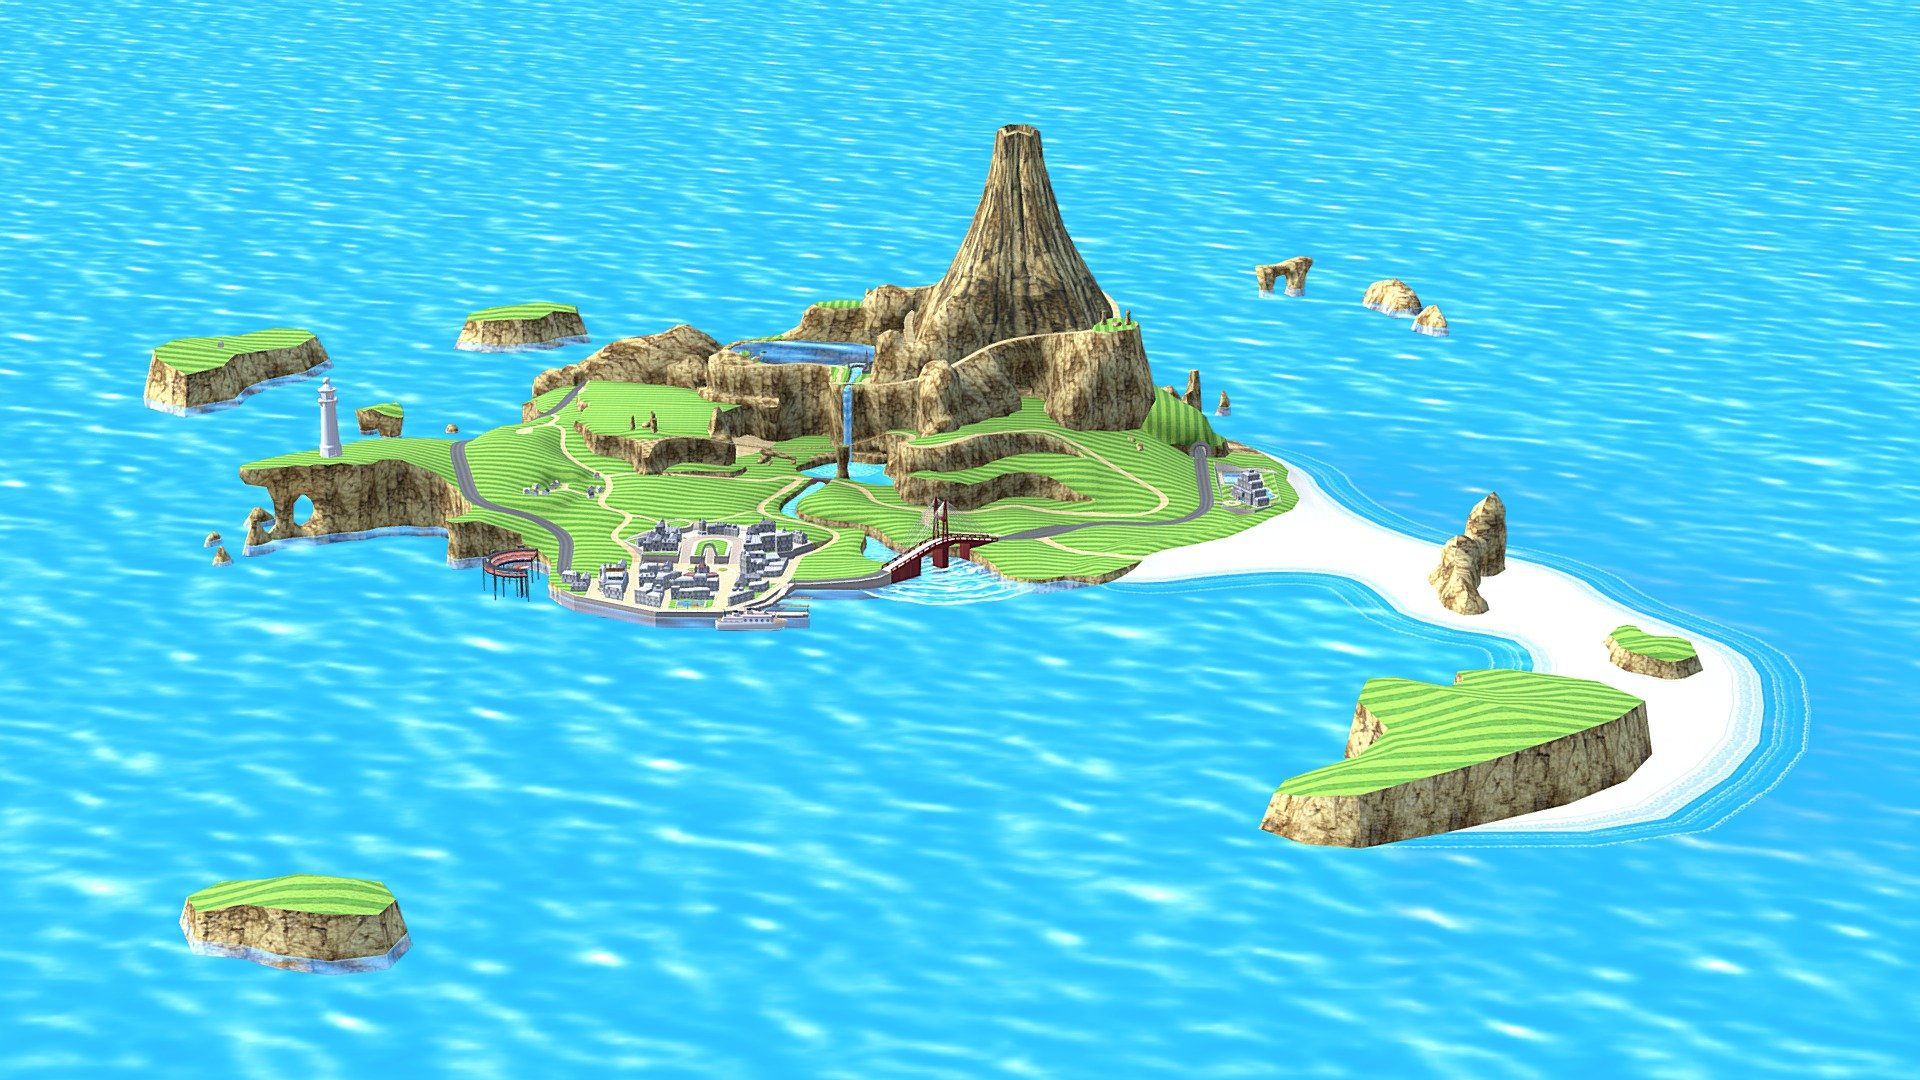 Wuhu Island - Wii Sports Resort - Download Free 3D model by Nelib (@Nelib)  [68d83db]